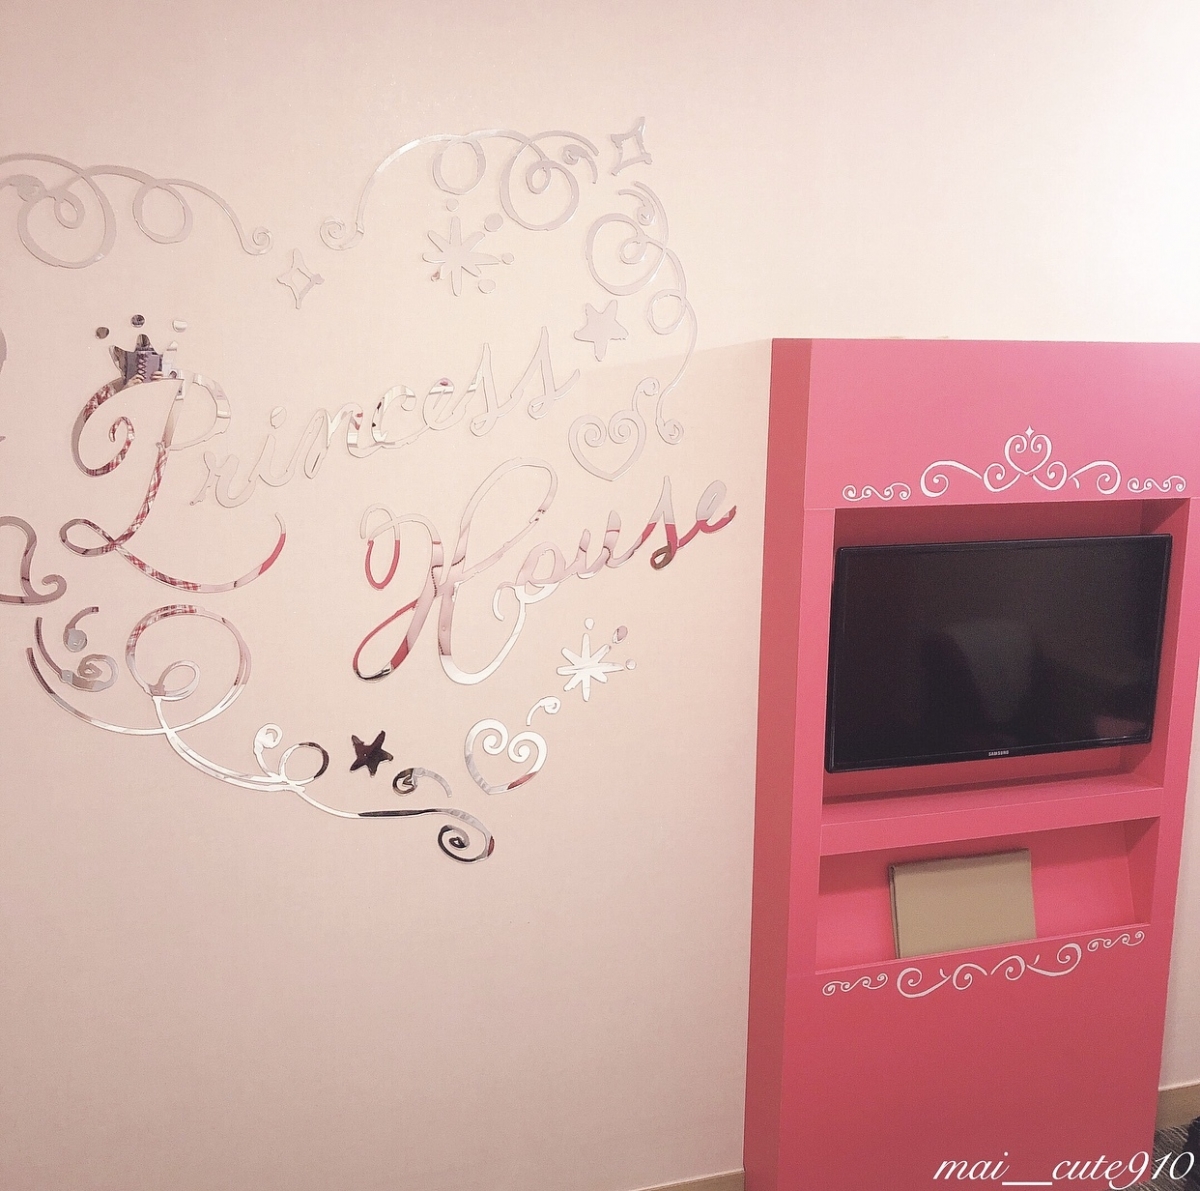 韓国旅行で絶対泊まりたい ピンク空間がかわいいホテルをチェック ローリエプレス